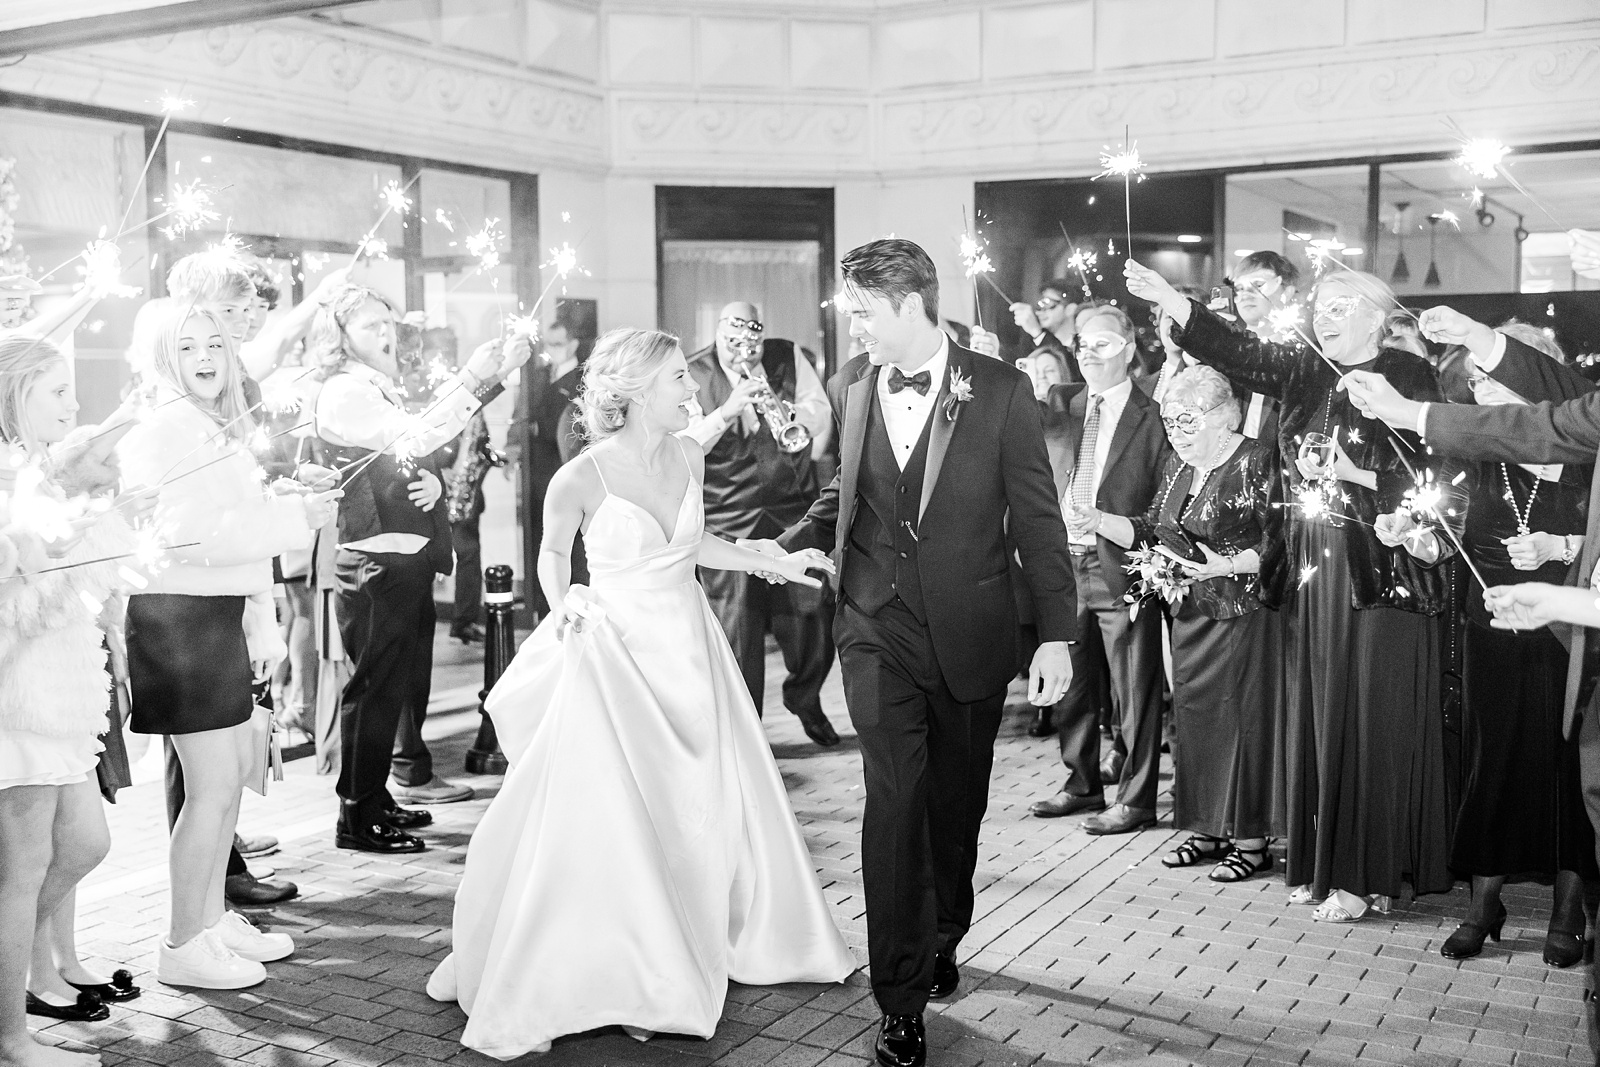 Poinsett Hotel - Wedding Reception